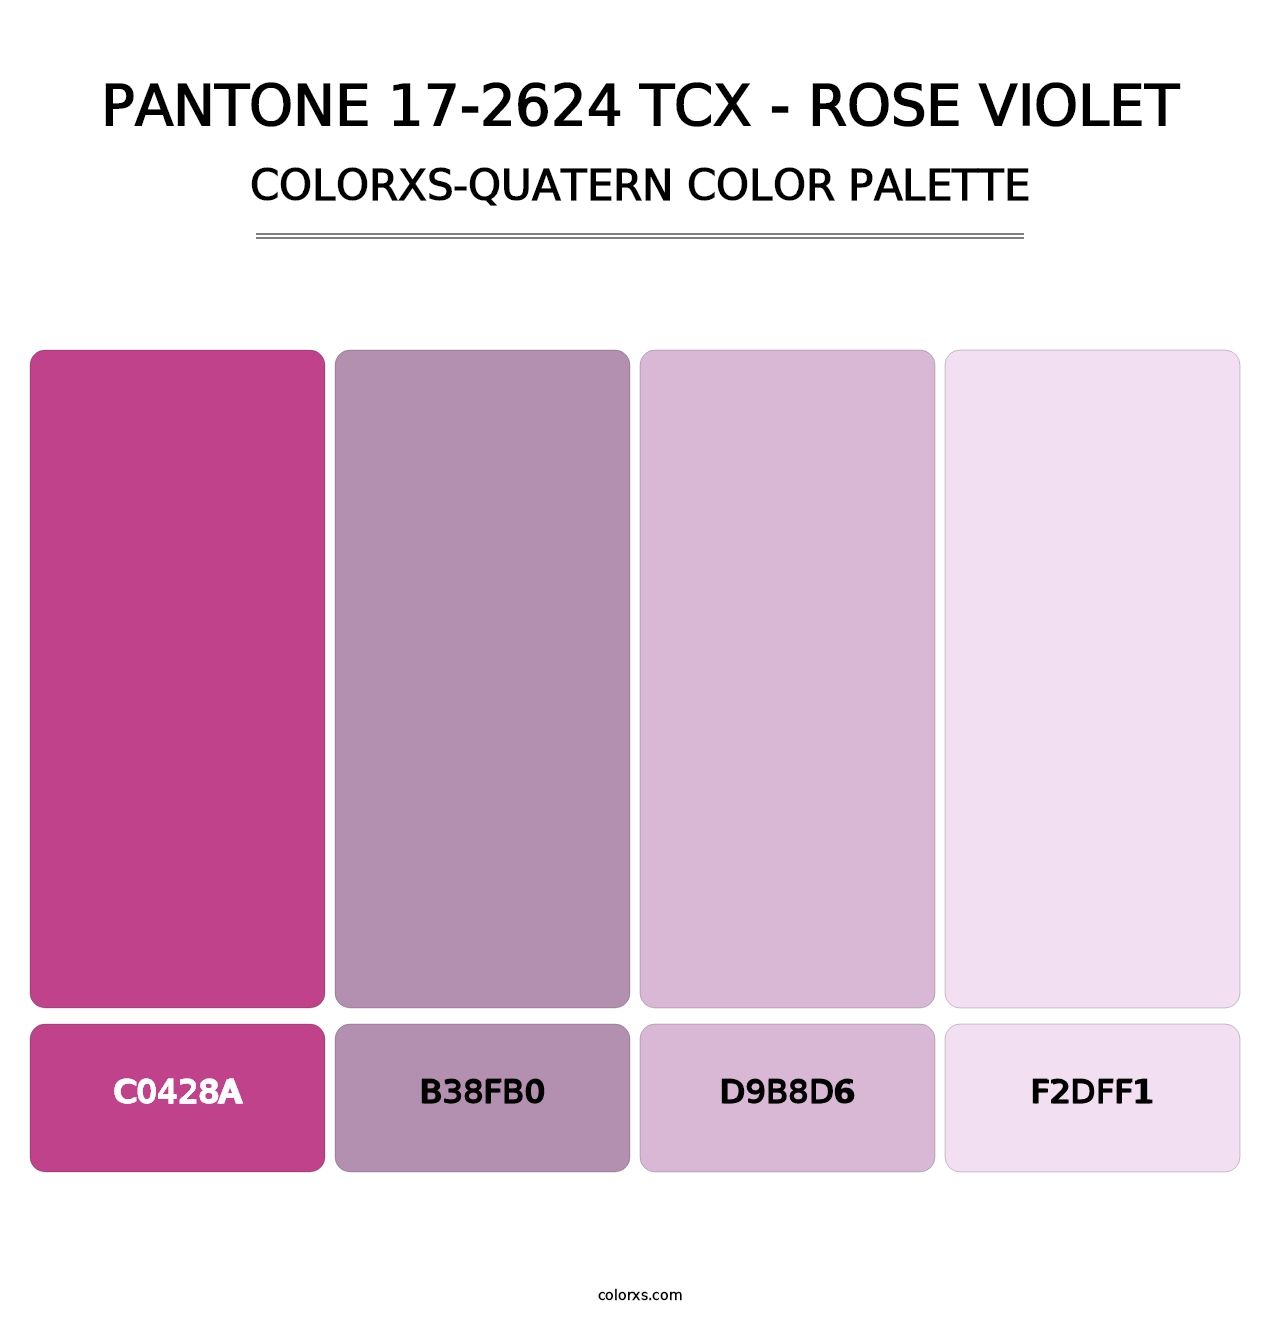 PANTONE 17-2624 TCX - Rose Violet - Colorxs Quatern Palette